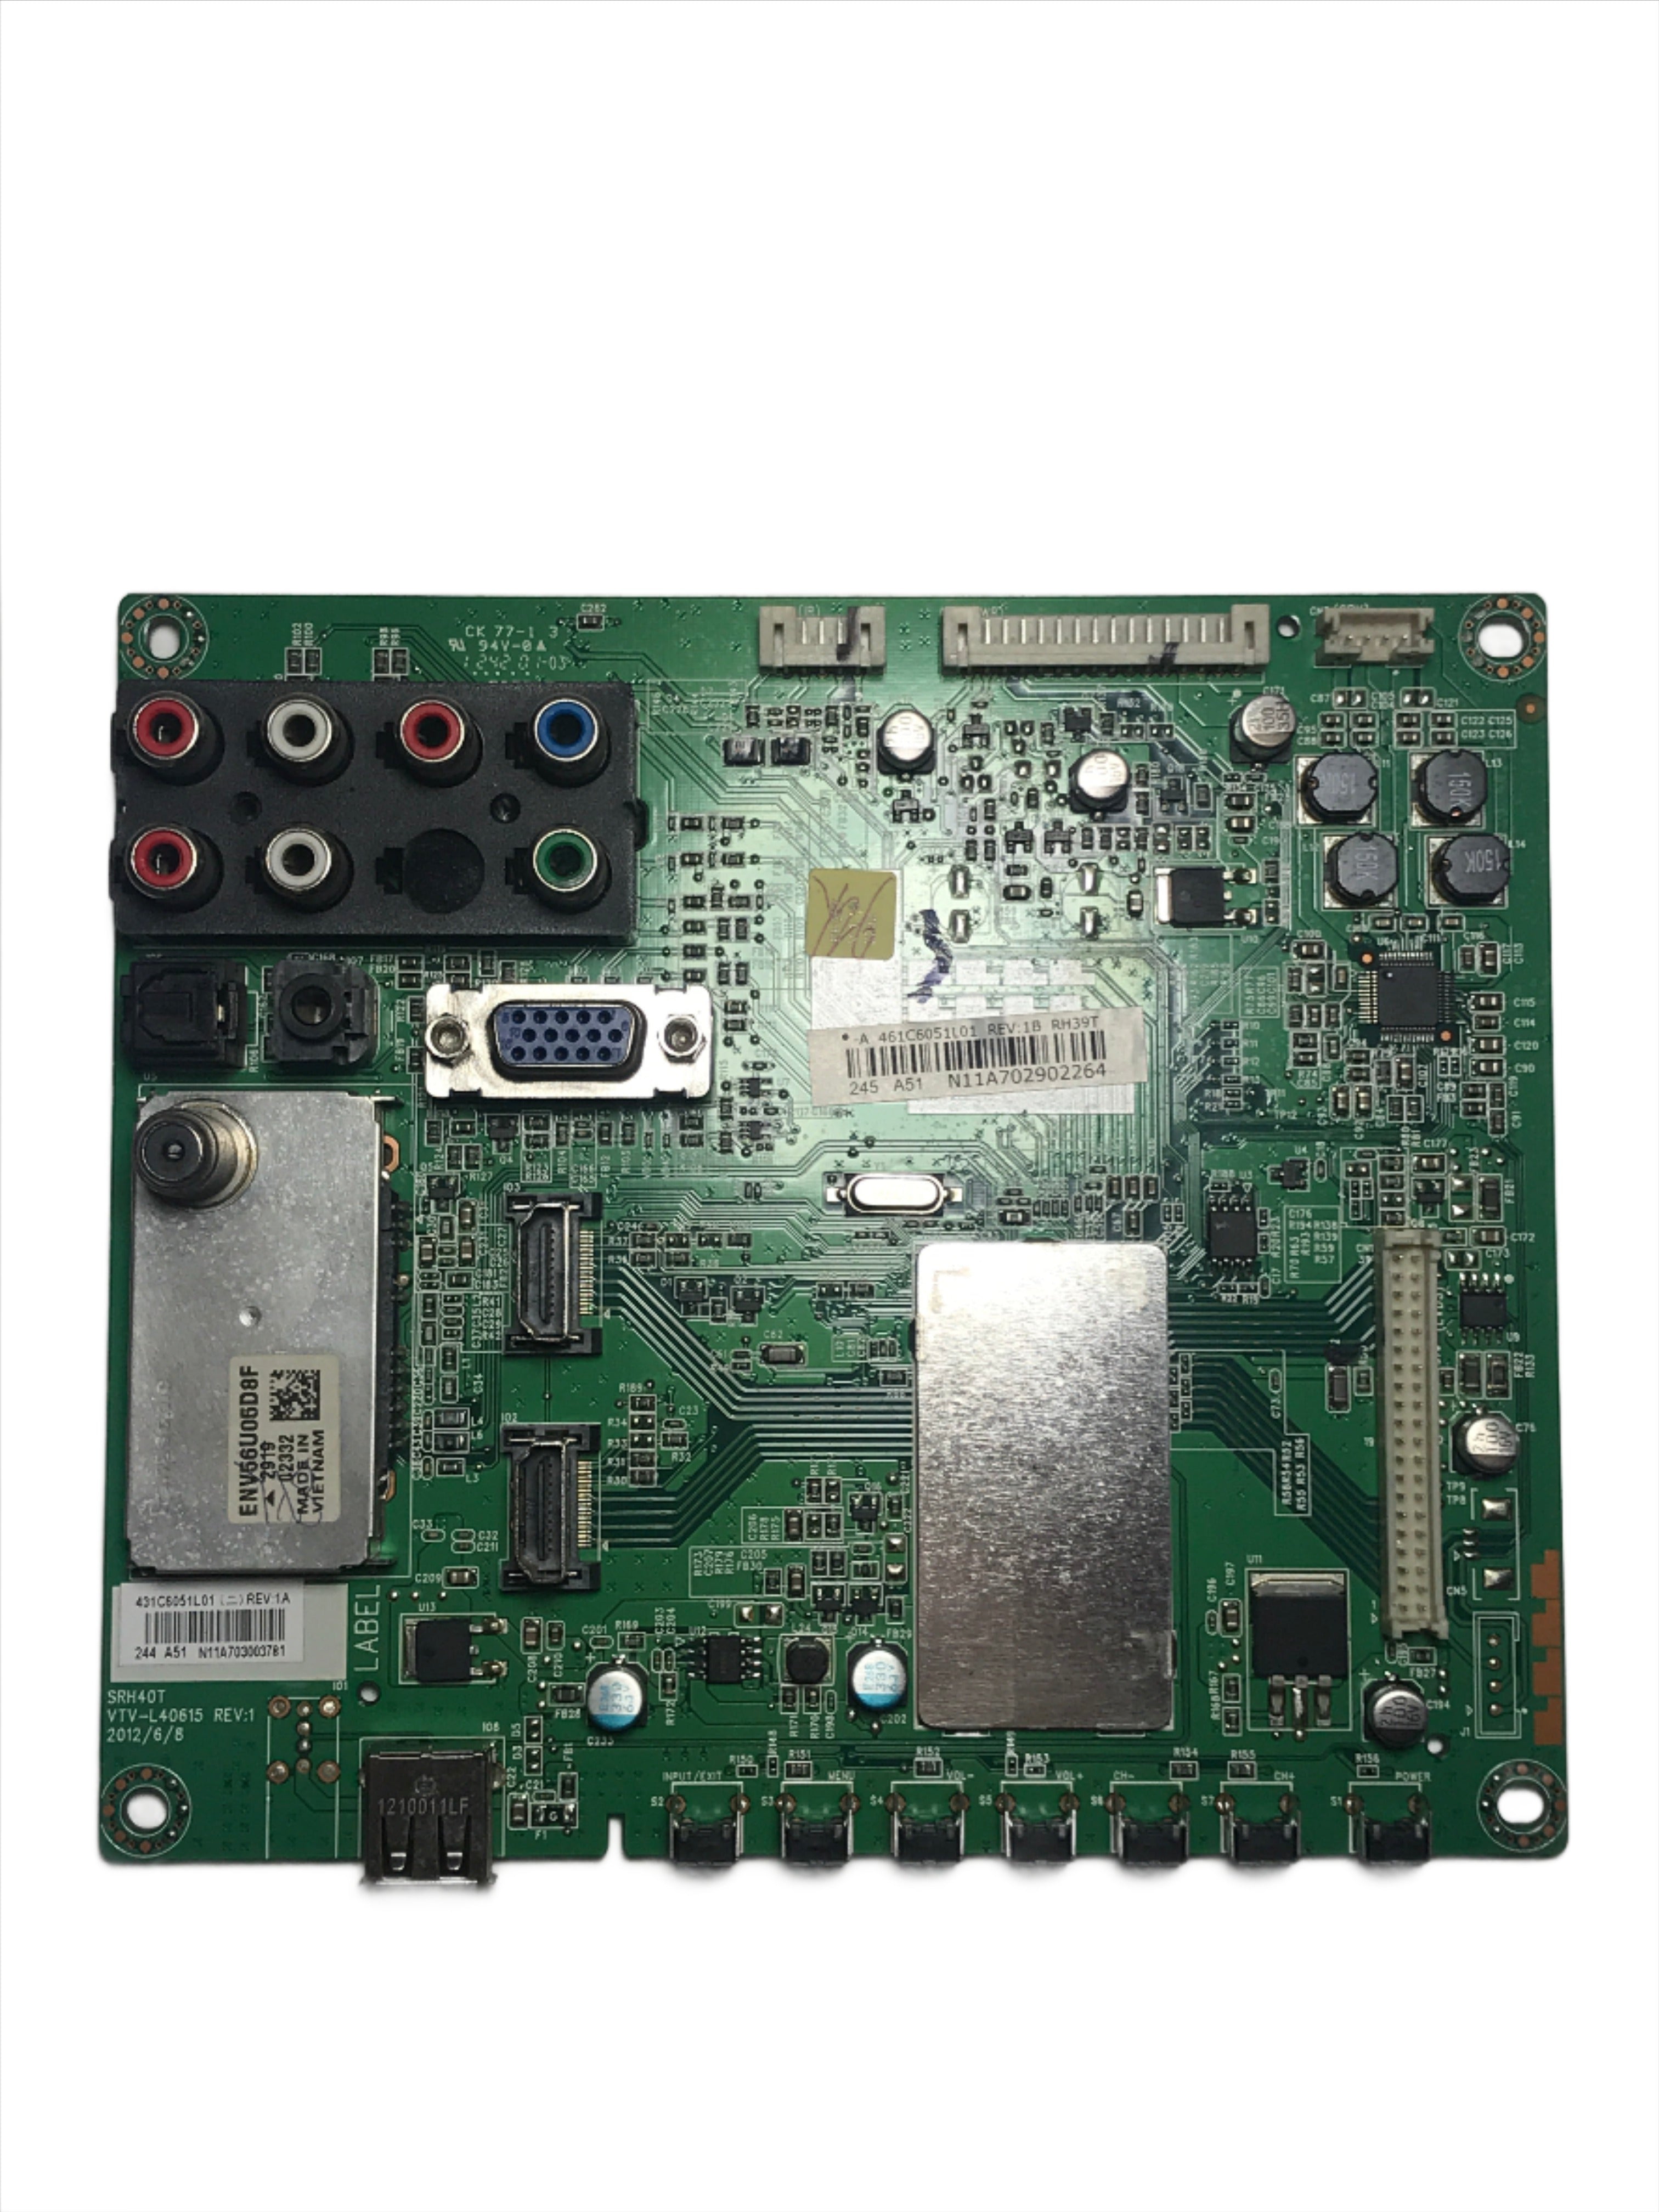 Toshiba 75032512 431C6051L01 Main Board for 39L22U